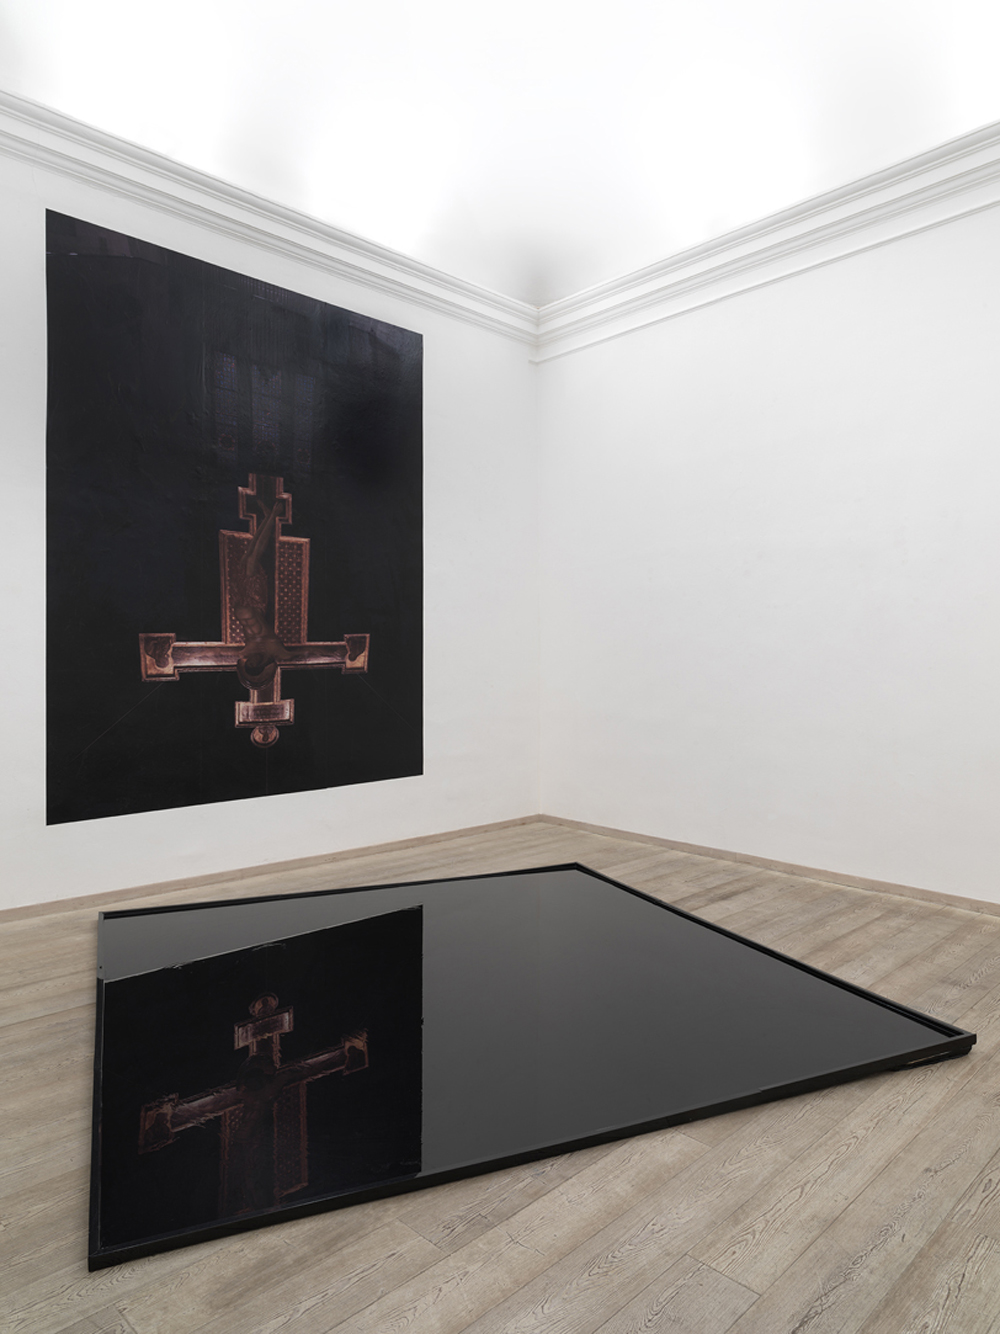 sala II - Installazione d’olio 
Cimabue 2, Chiesa di San Domenico, Arezzo, 2014, stampa fotografica e vasca d’olio, dimensione ambiente